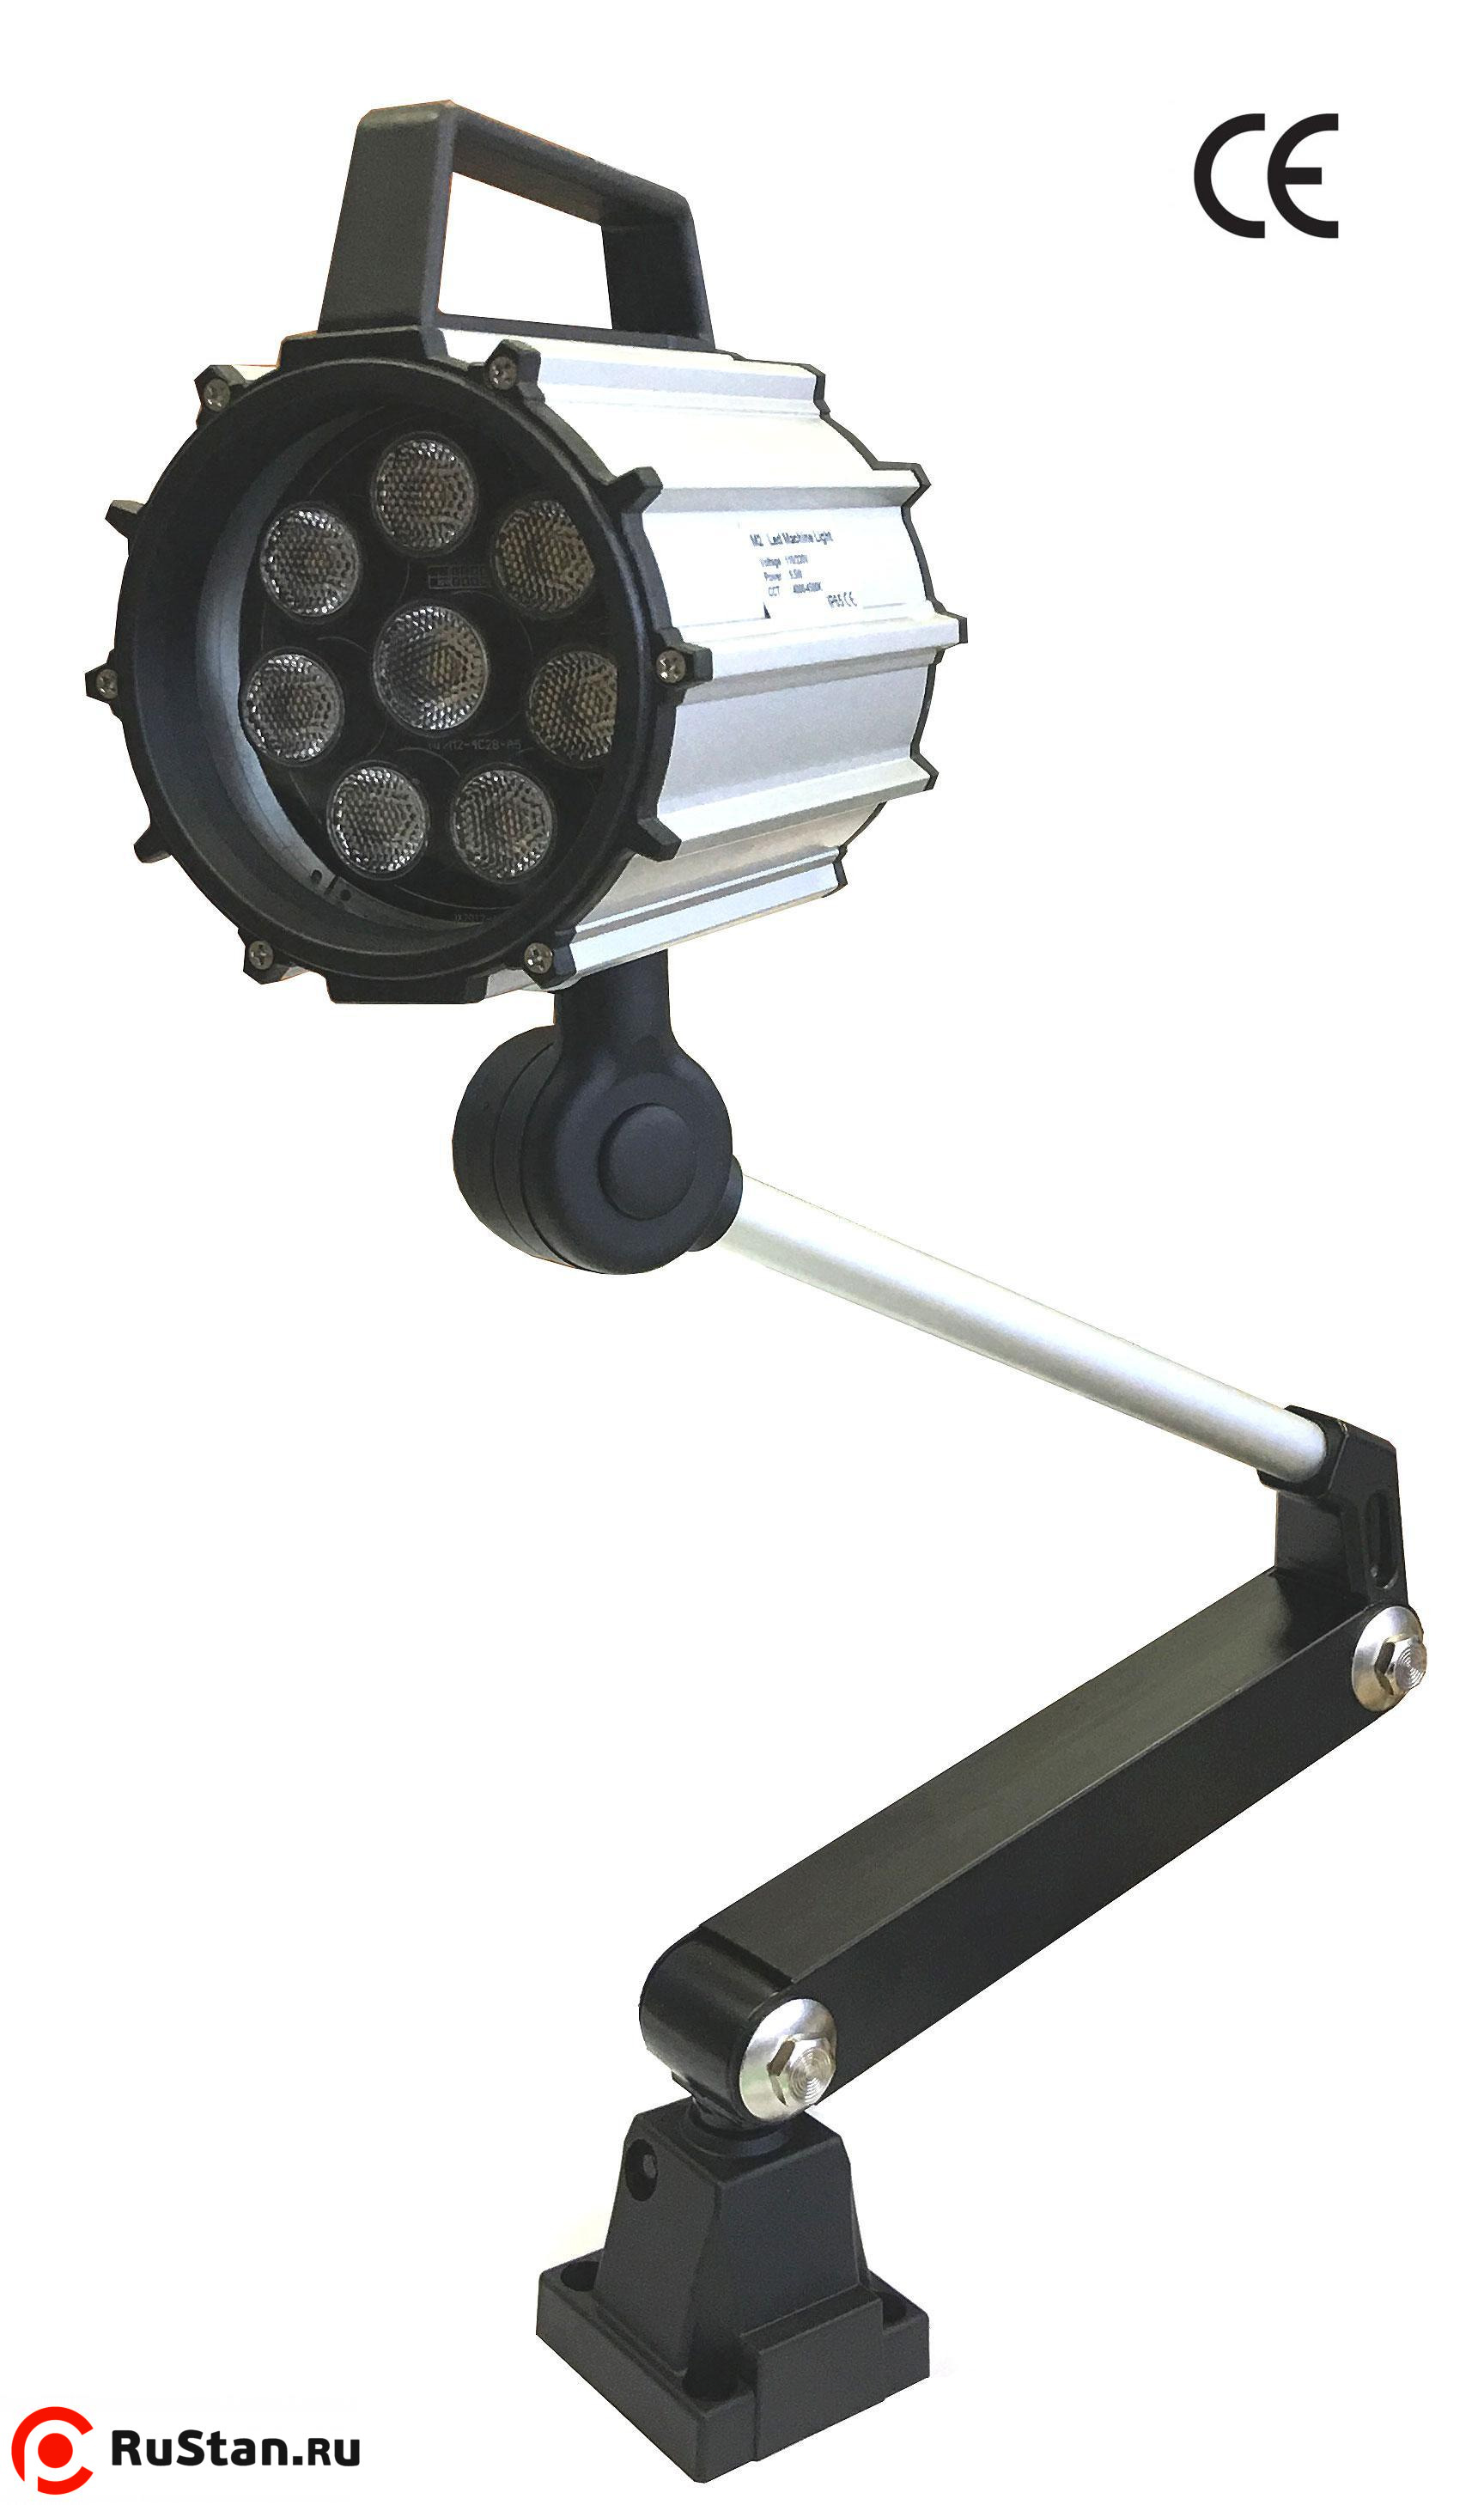 Светильник станочный светодиодный LED M2-24V с выключателем - цена .